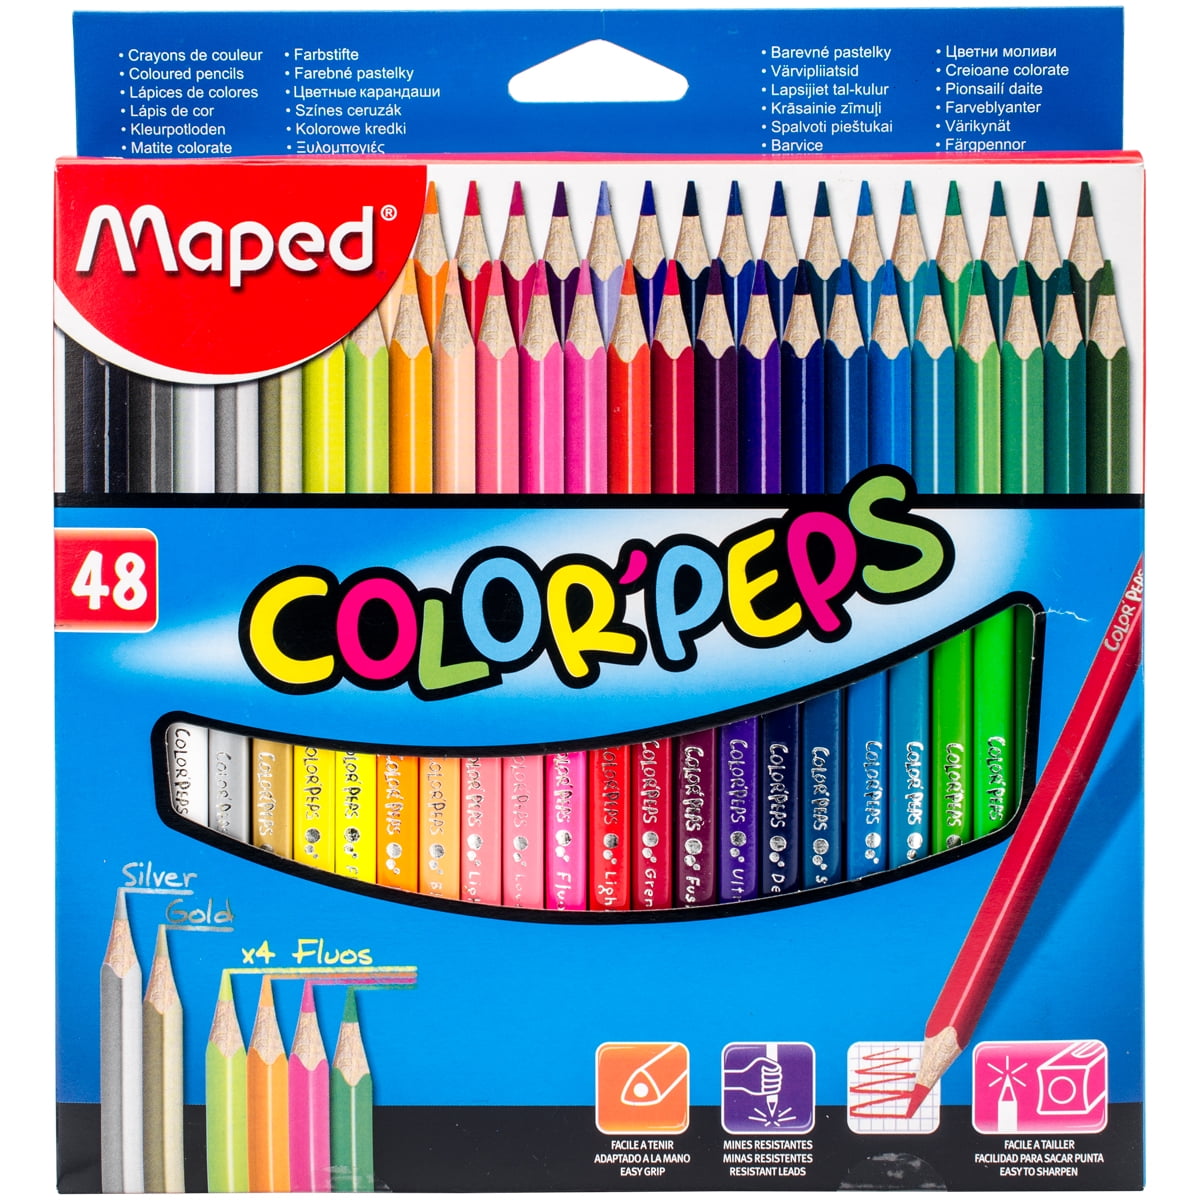 172 Colored Pencils, Shuttle Art Soft Core Color Pencil Set for